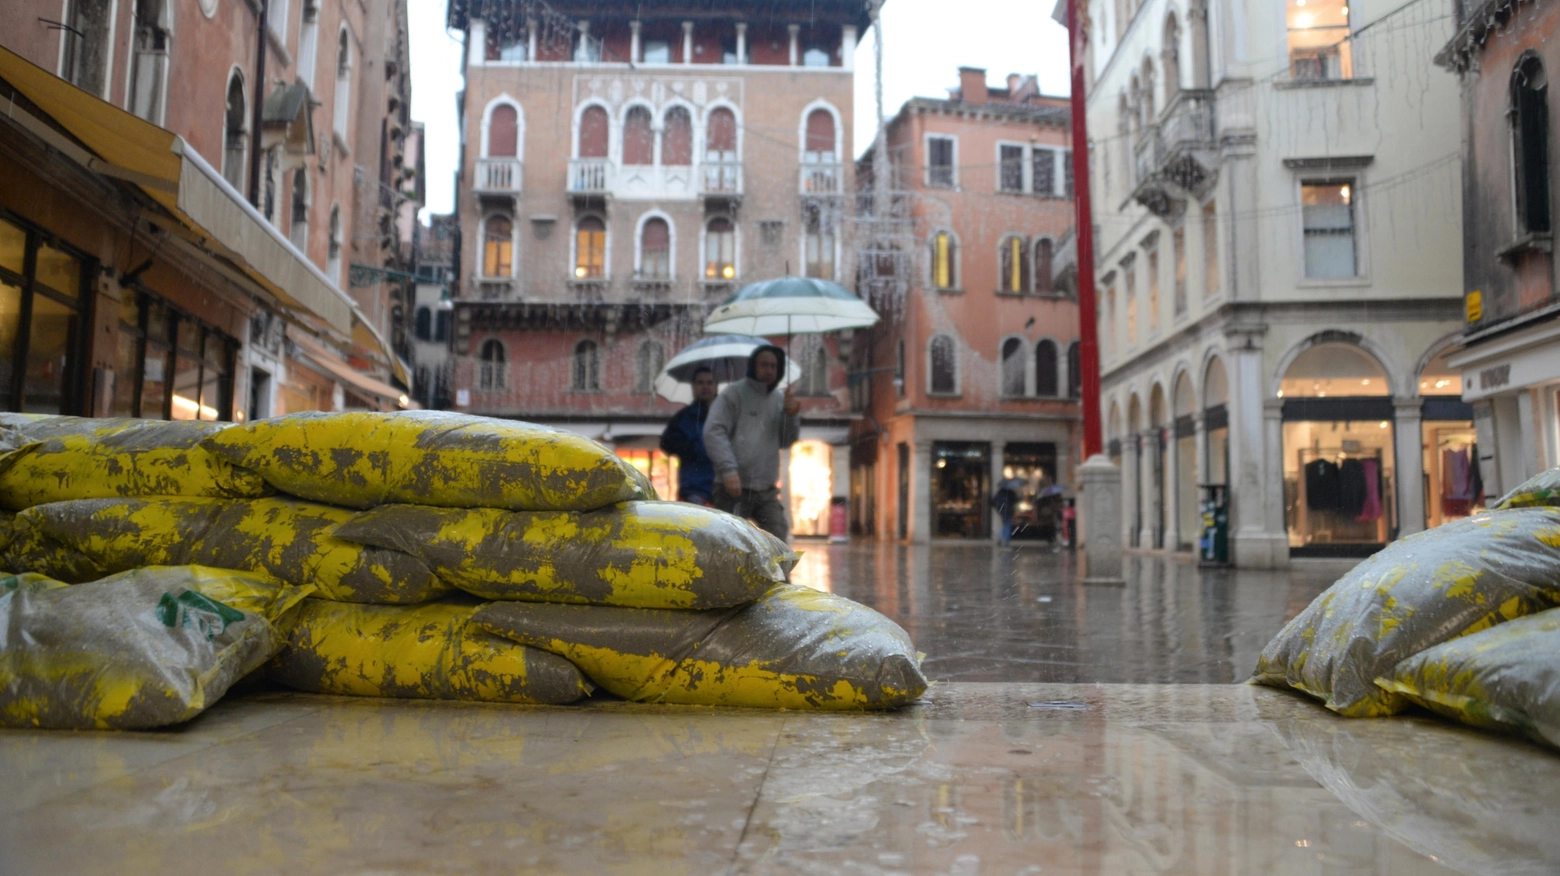 Le barriere sono rimaste abbassate a Malamocco e Chioggia. Allagata piazza San Marco